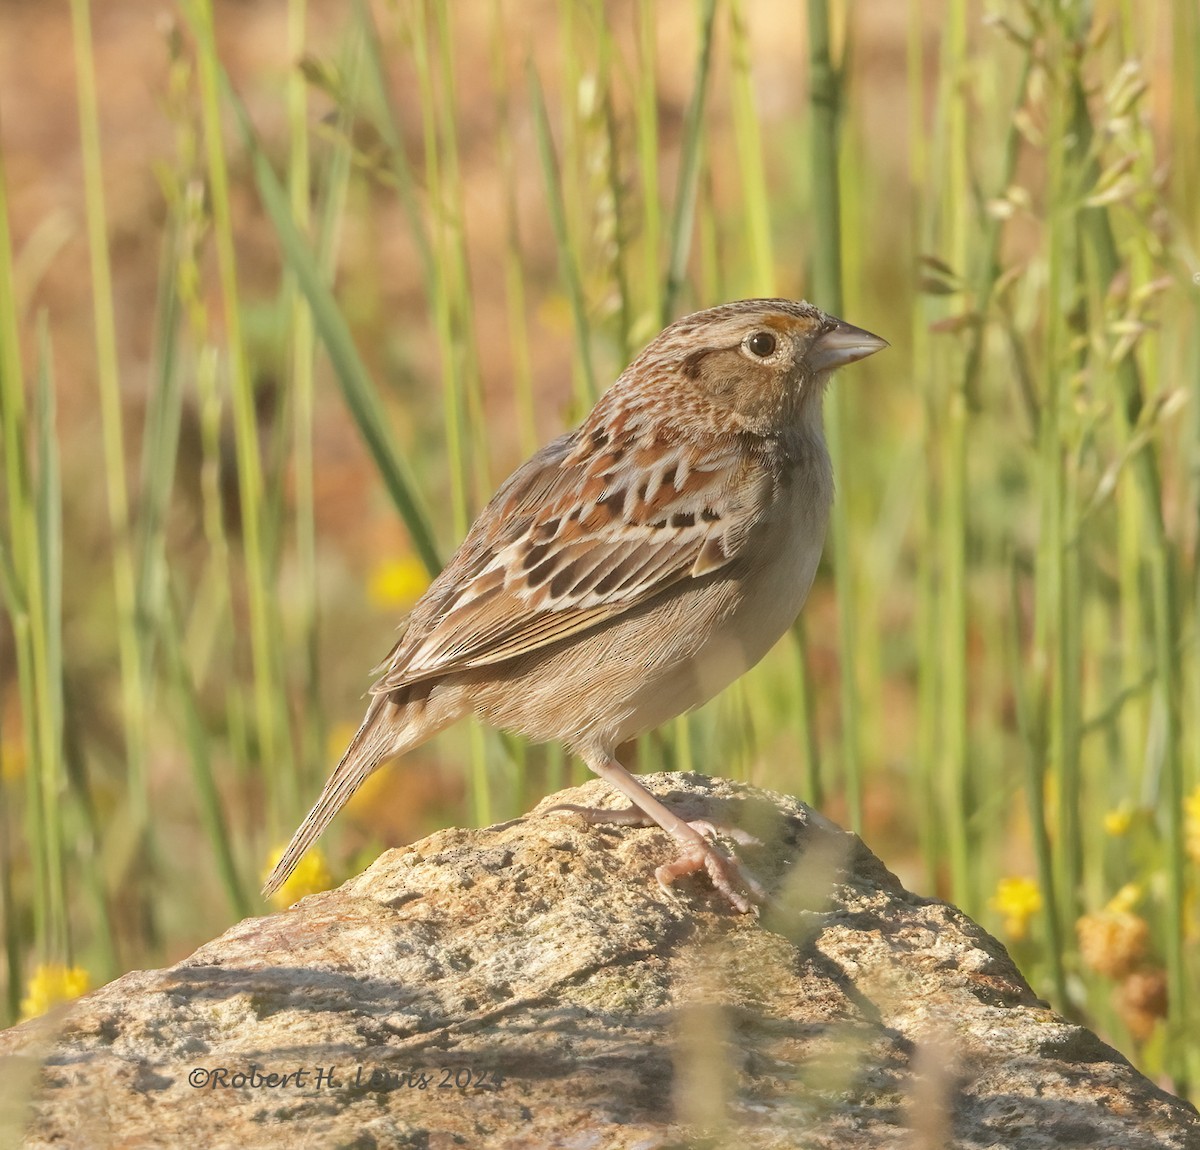 Grasshopper Sparrow - Robert Lewis